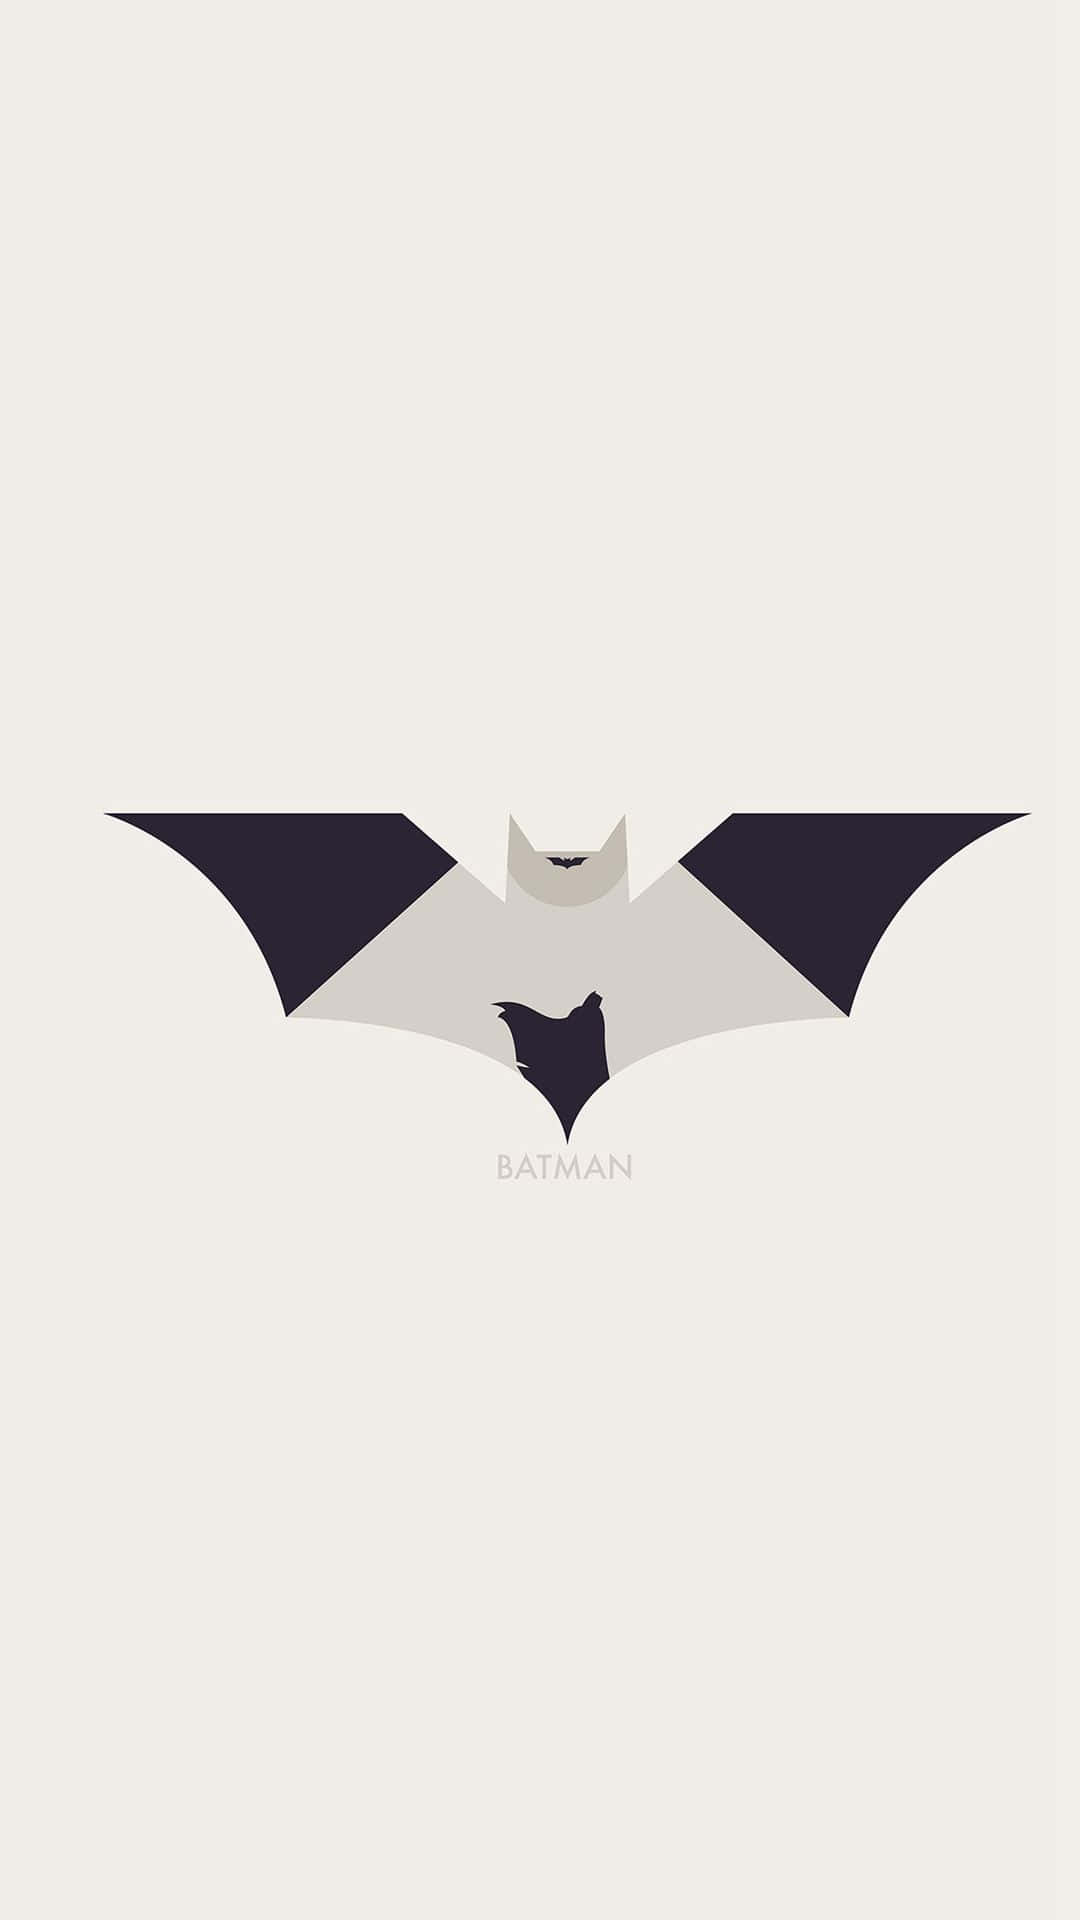 Black And White Batman Aesthetic Logo Wallpaper